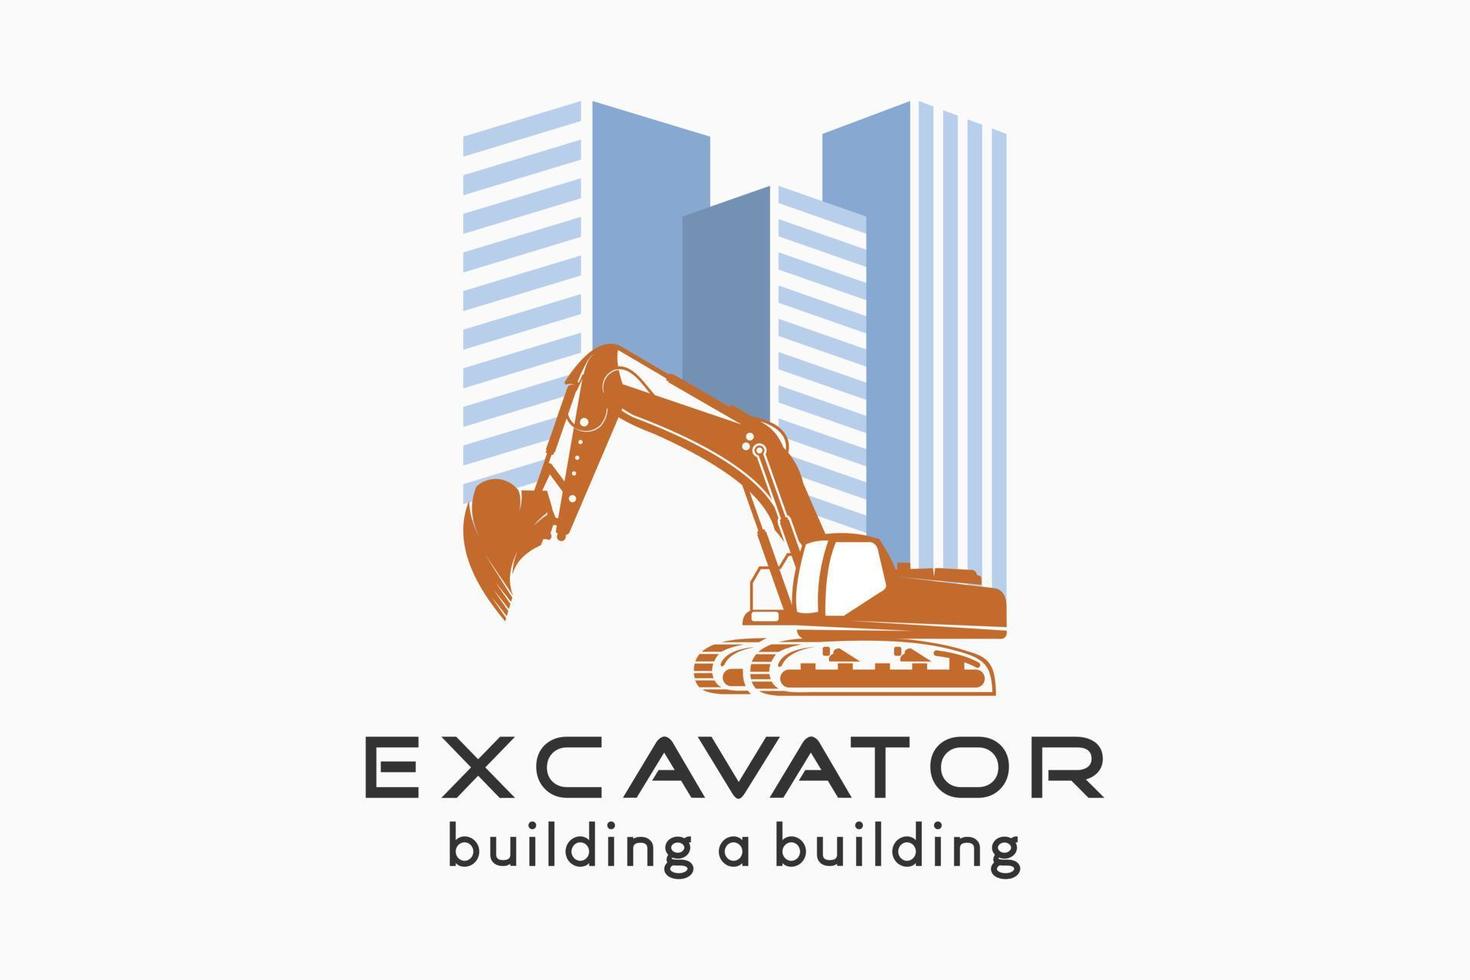 création de logo d'excavatrice avec une silhouette d'excavatrice combinée à un bâtiment, illustration vectorielle d'une excavatrice construisant un bâtiment avec un concept créatif. vecteur